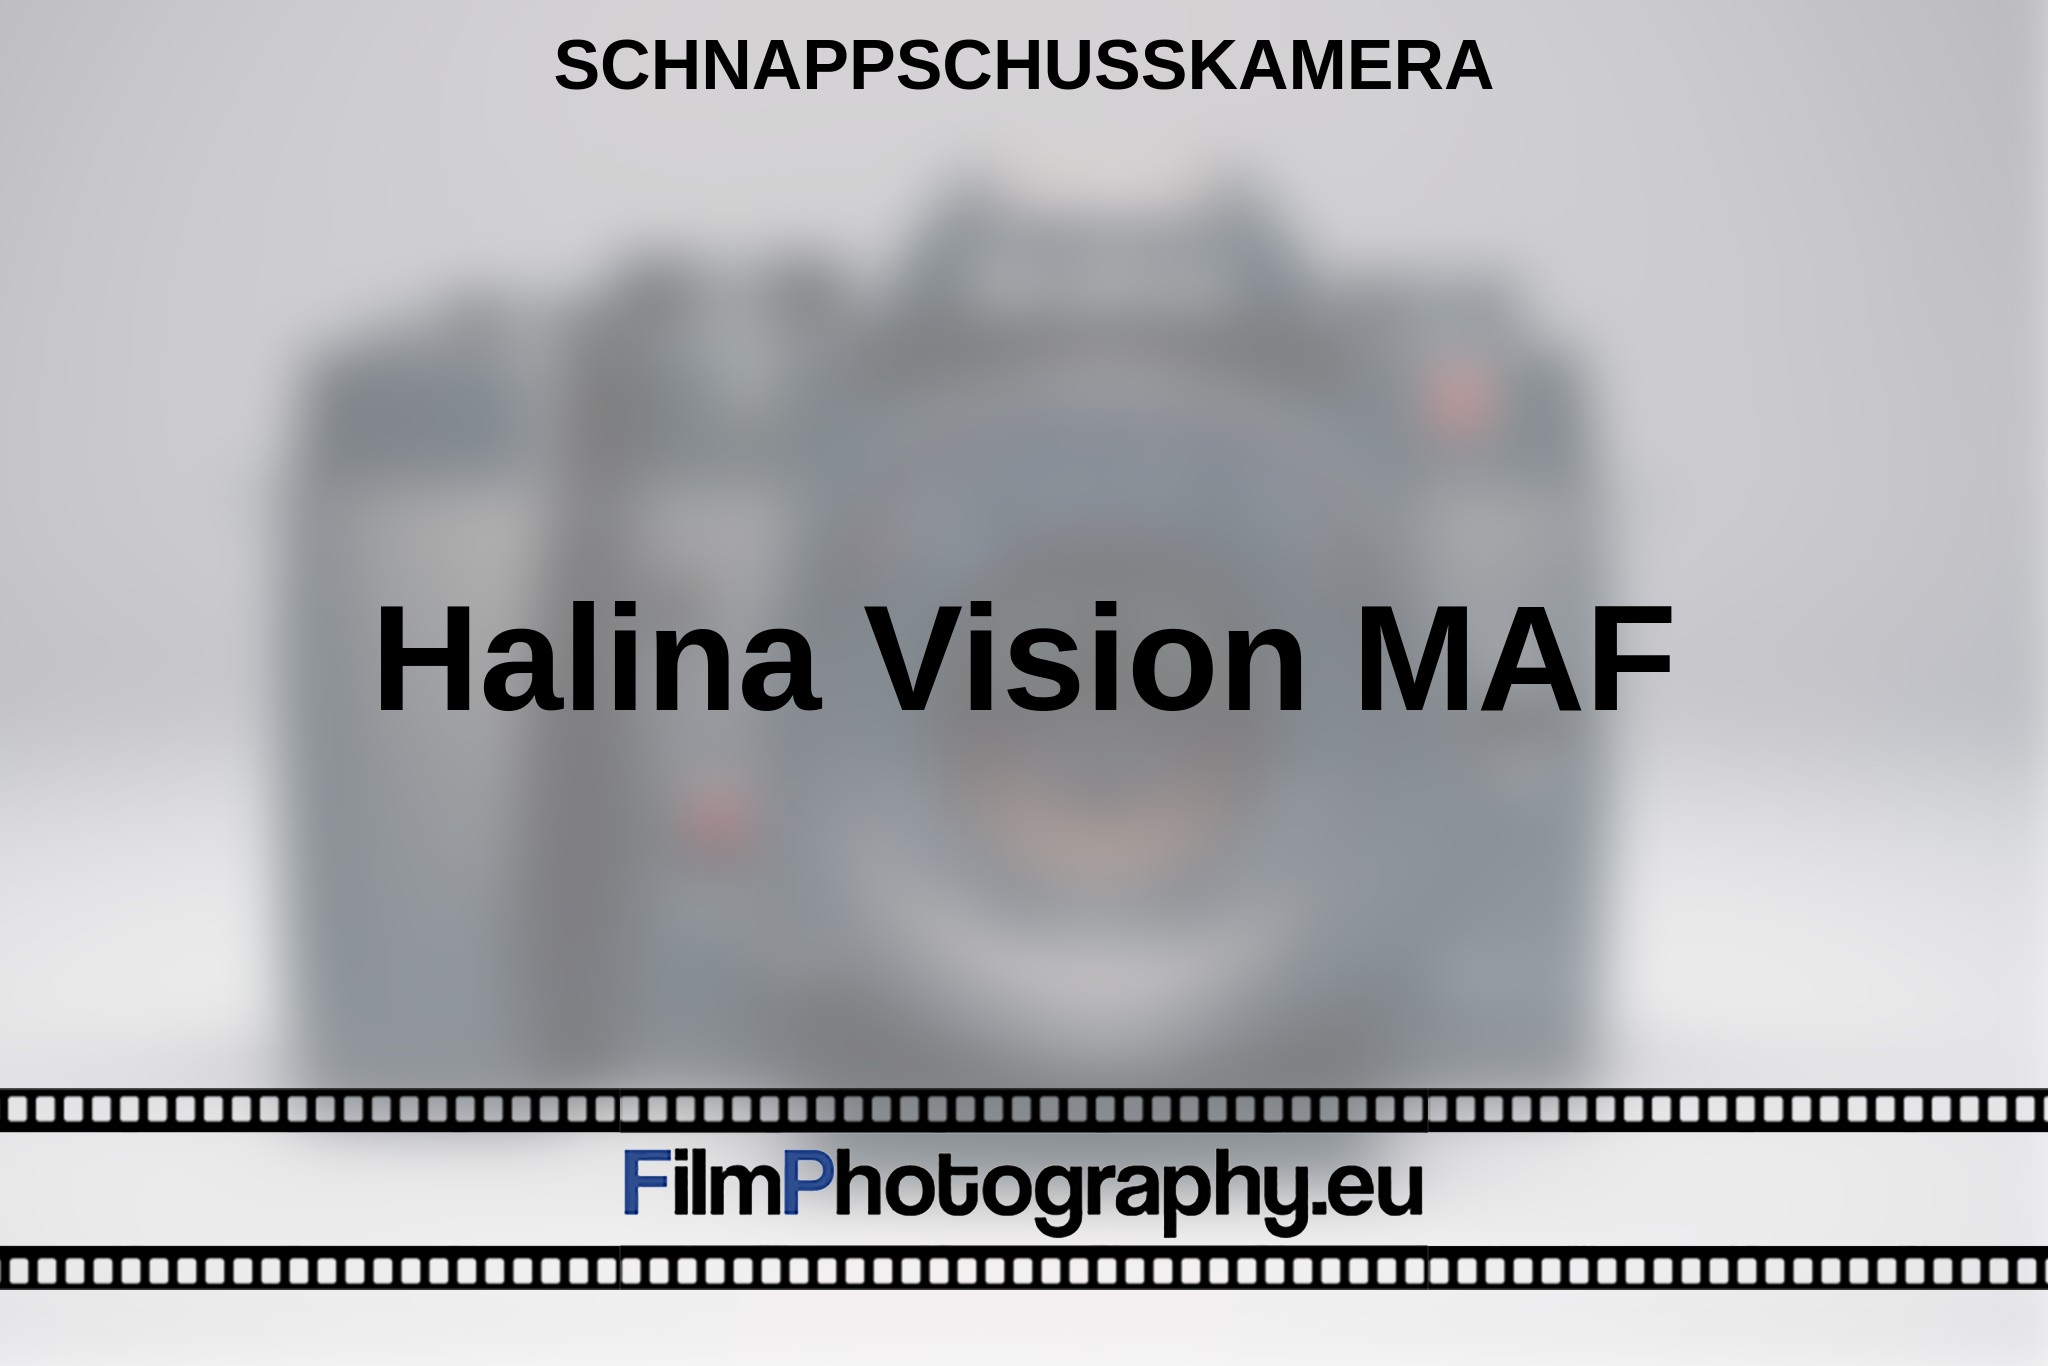 halina-vision-maf-schnappschusskamera-bnv.jpg